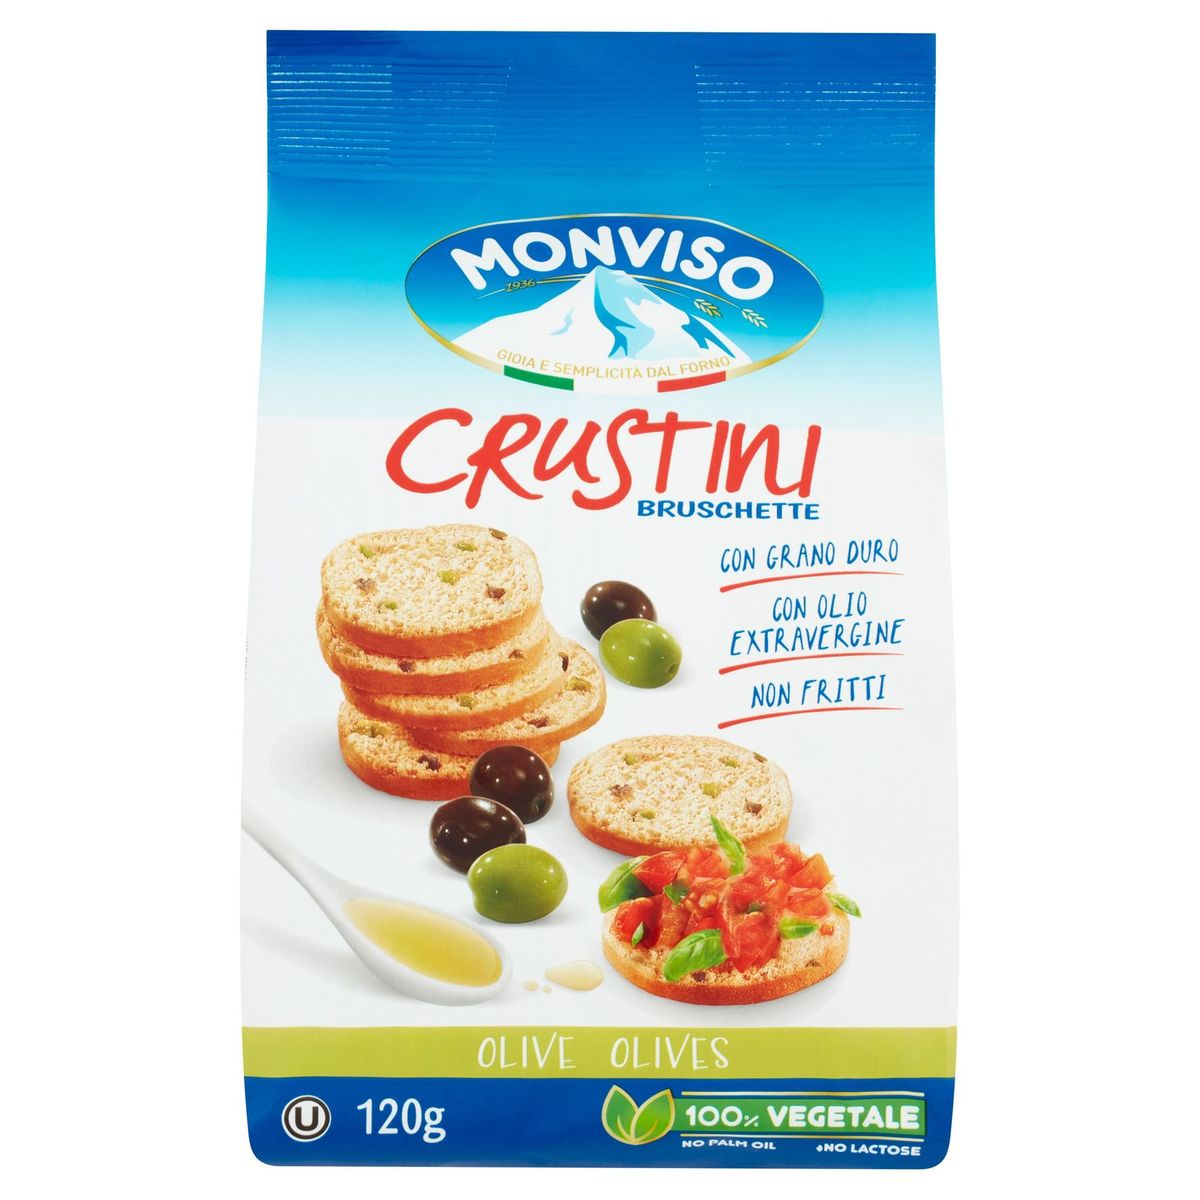 Monviso Crustini Bruschette Olives 120 g